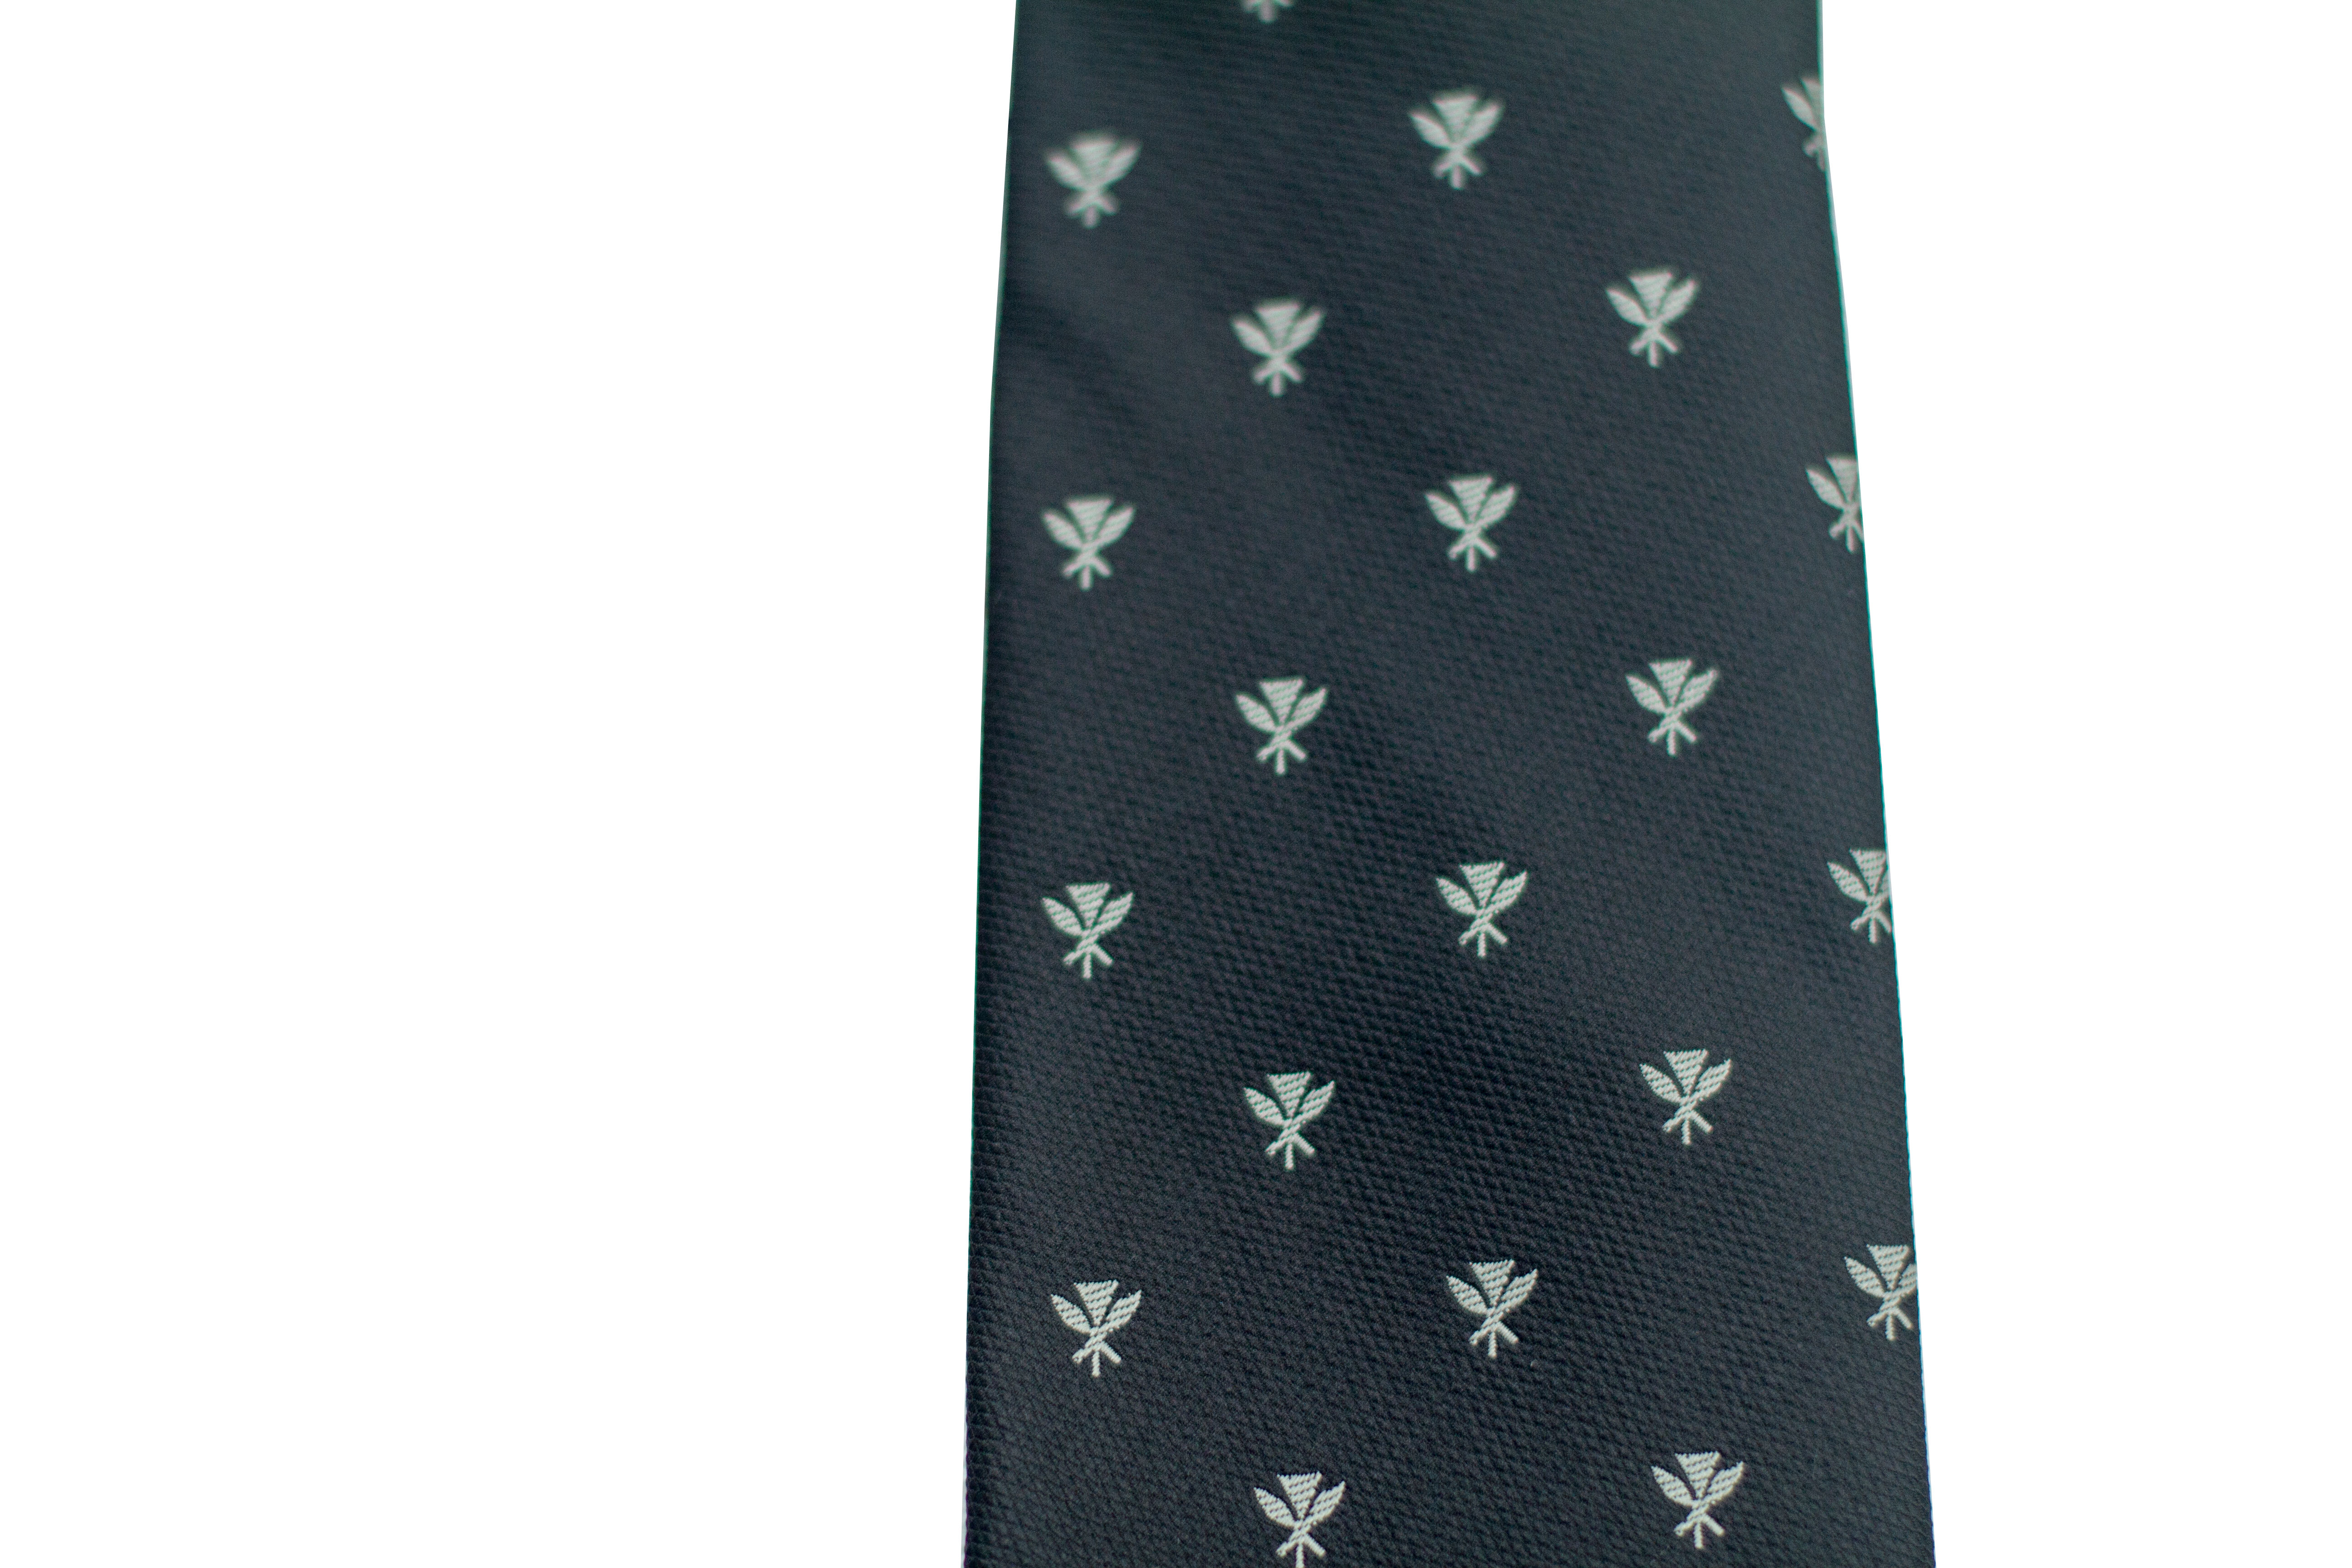 Kanaka Maoli Black Modern Necktie